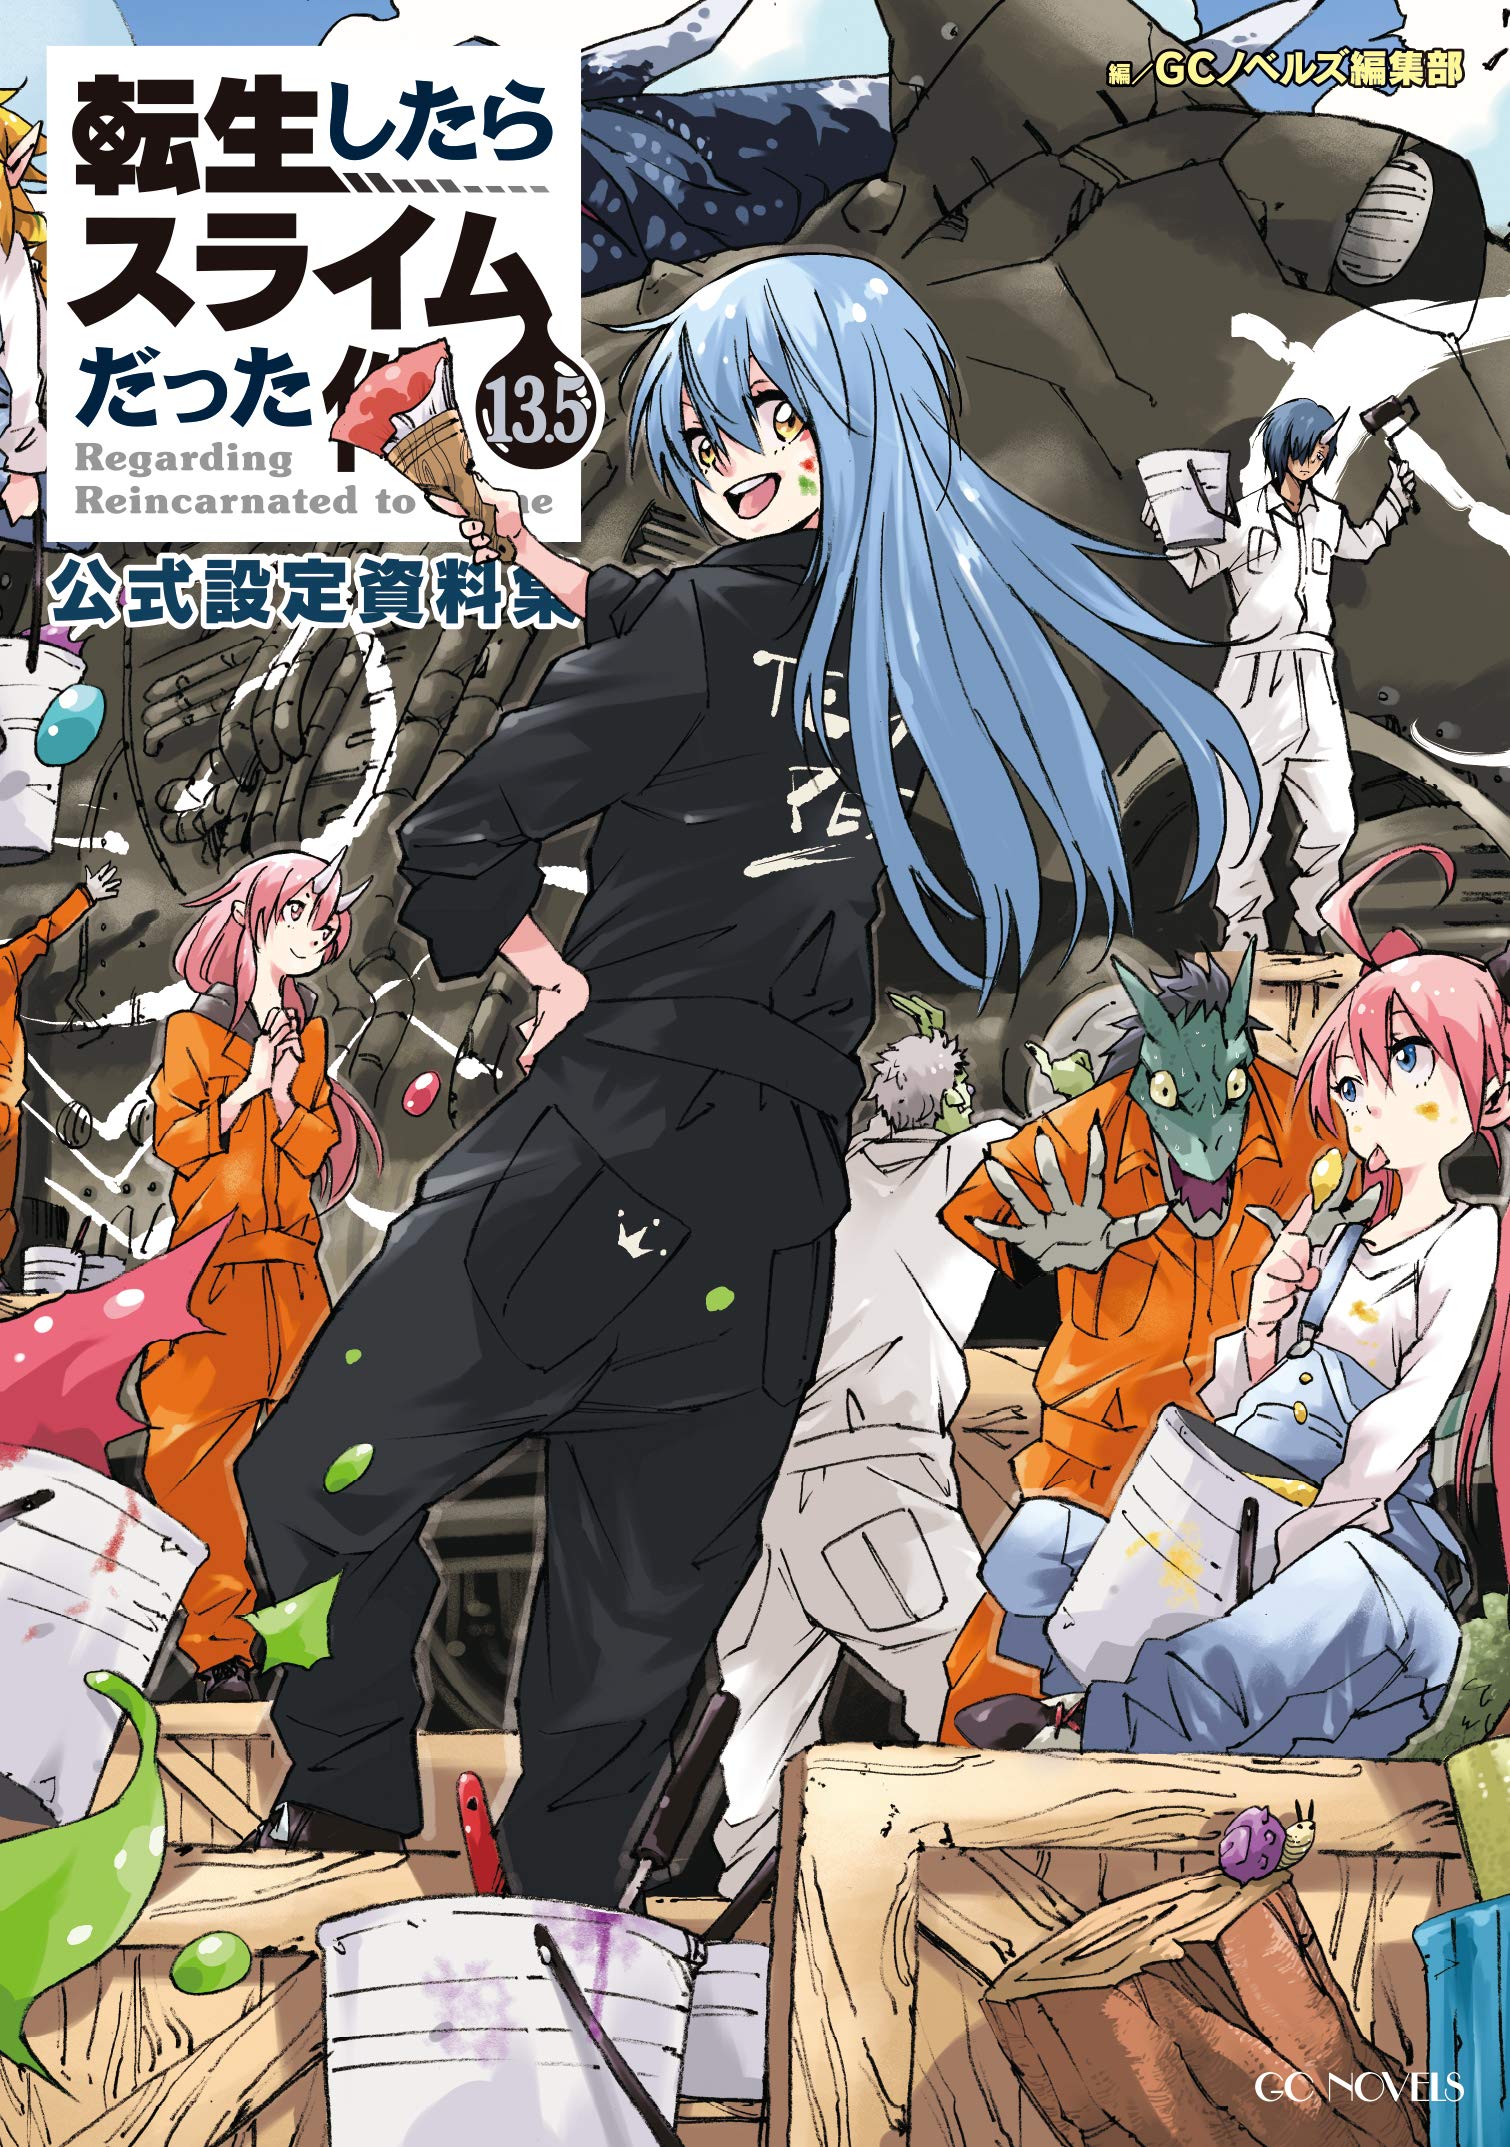 Manga Volume 8, Tensei Shitara Slime Datta Ken Wiki